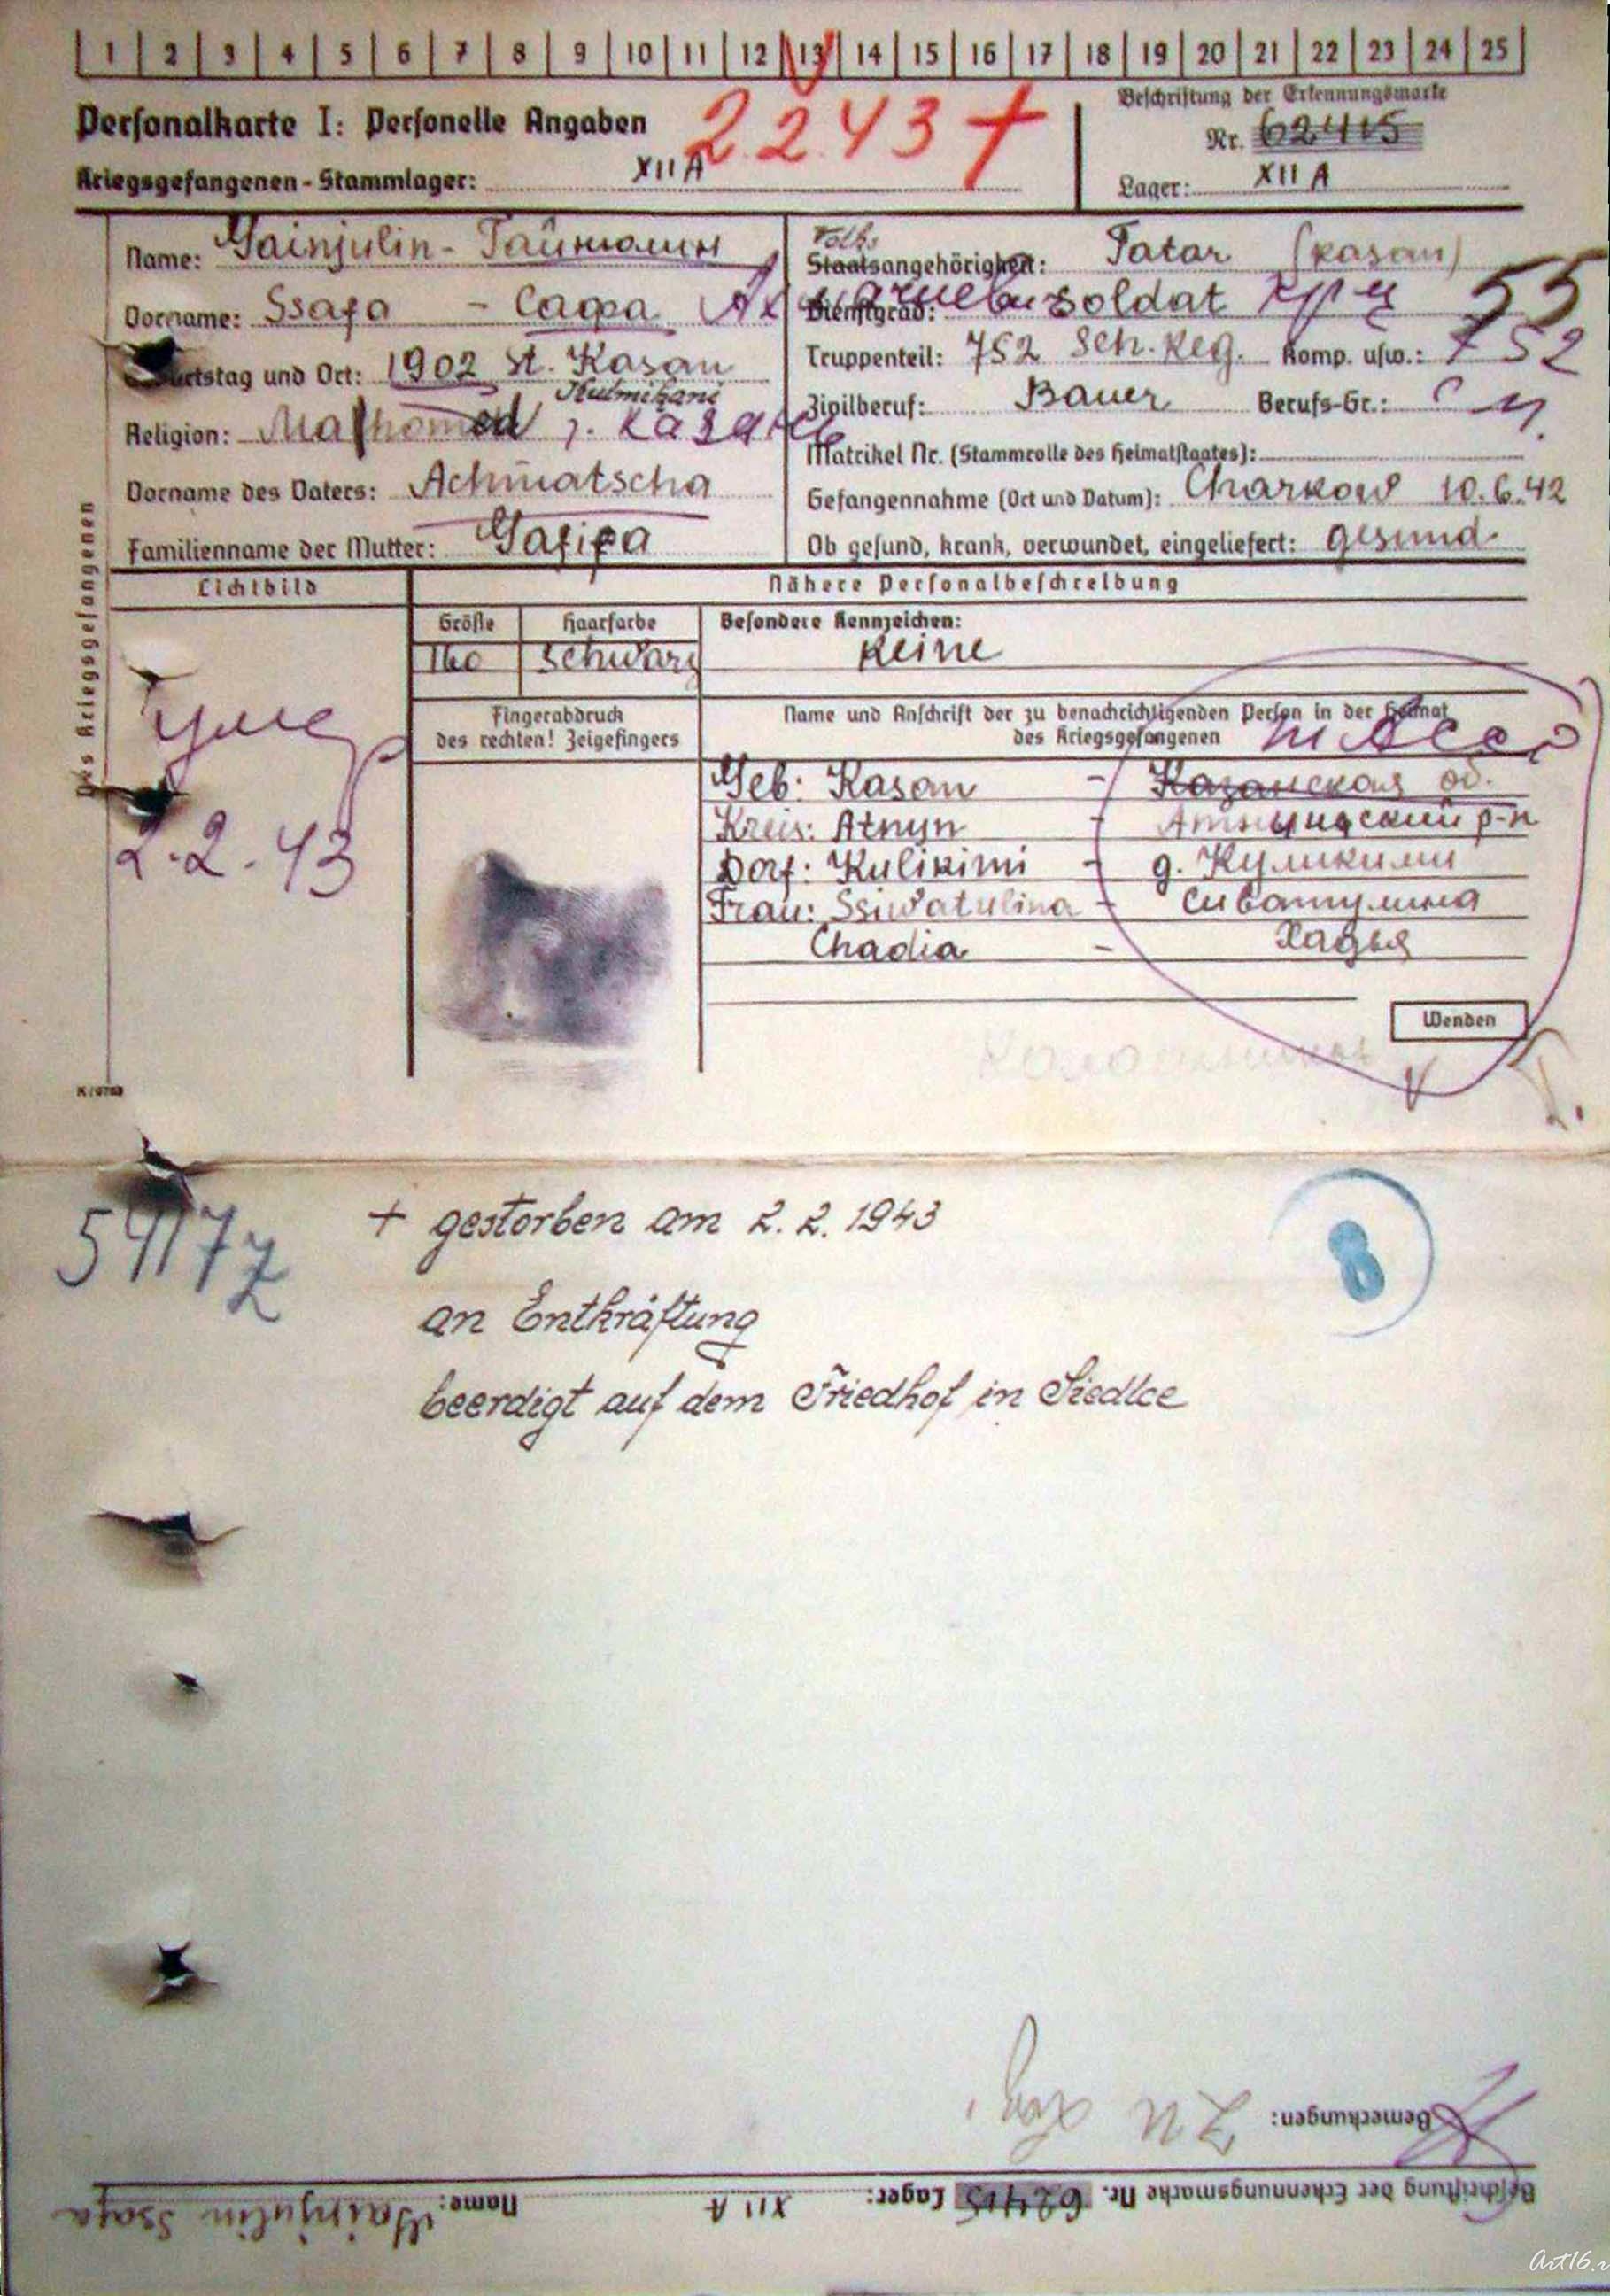 Личная карточка узника концентрационного лагеря::Музей ВОв